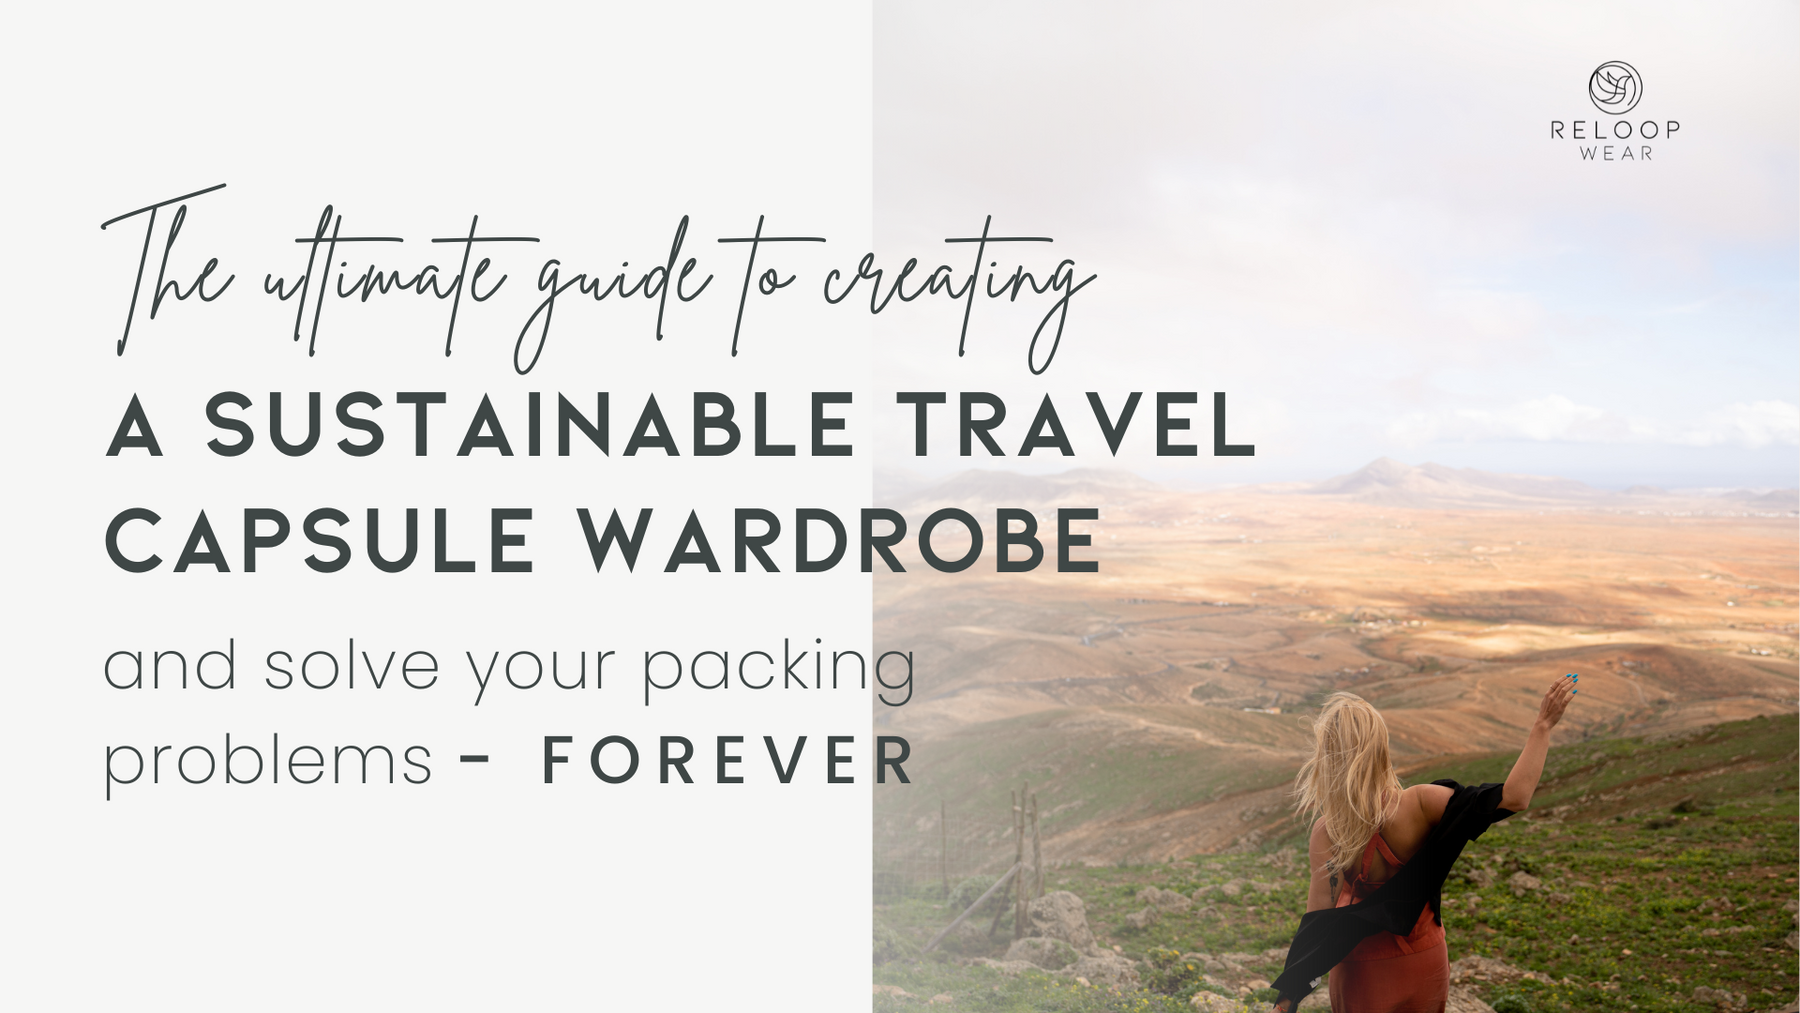 The ultimate travel capsule wardrobe guide by Reloop Wear -2023